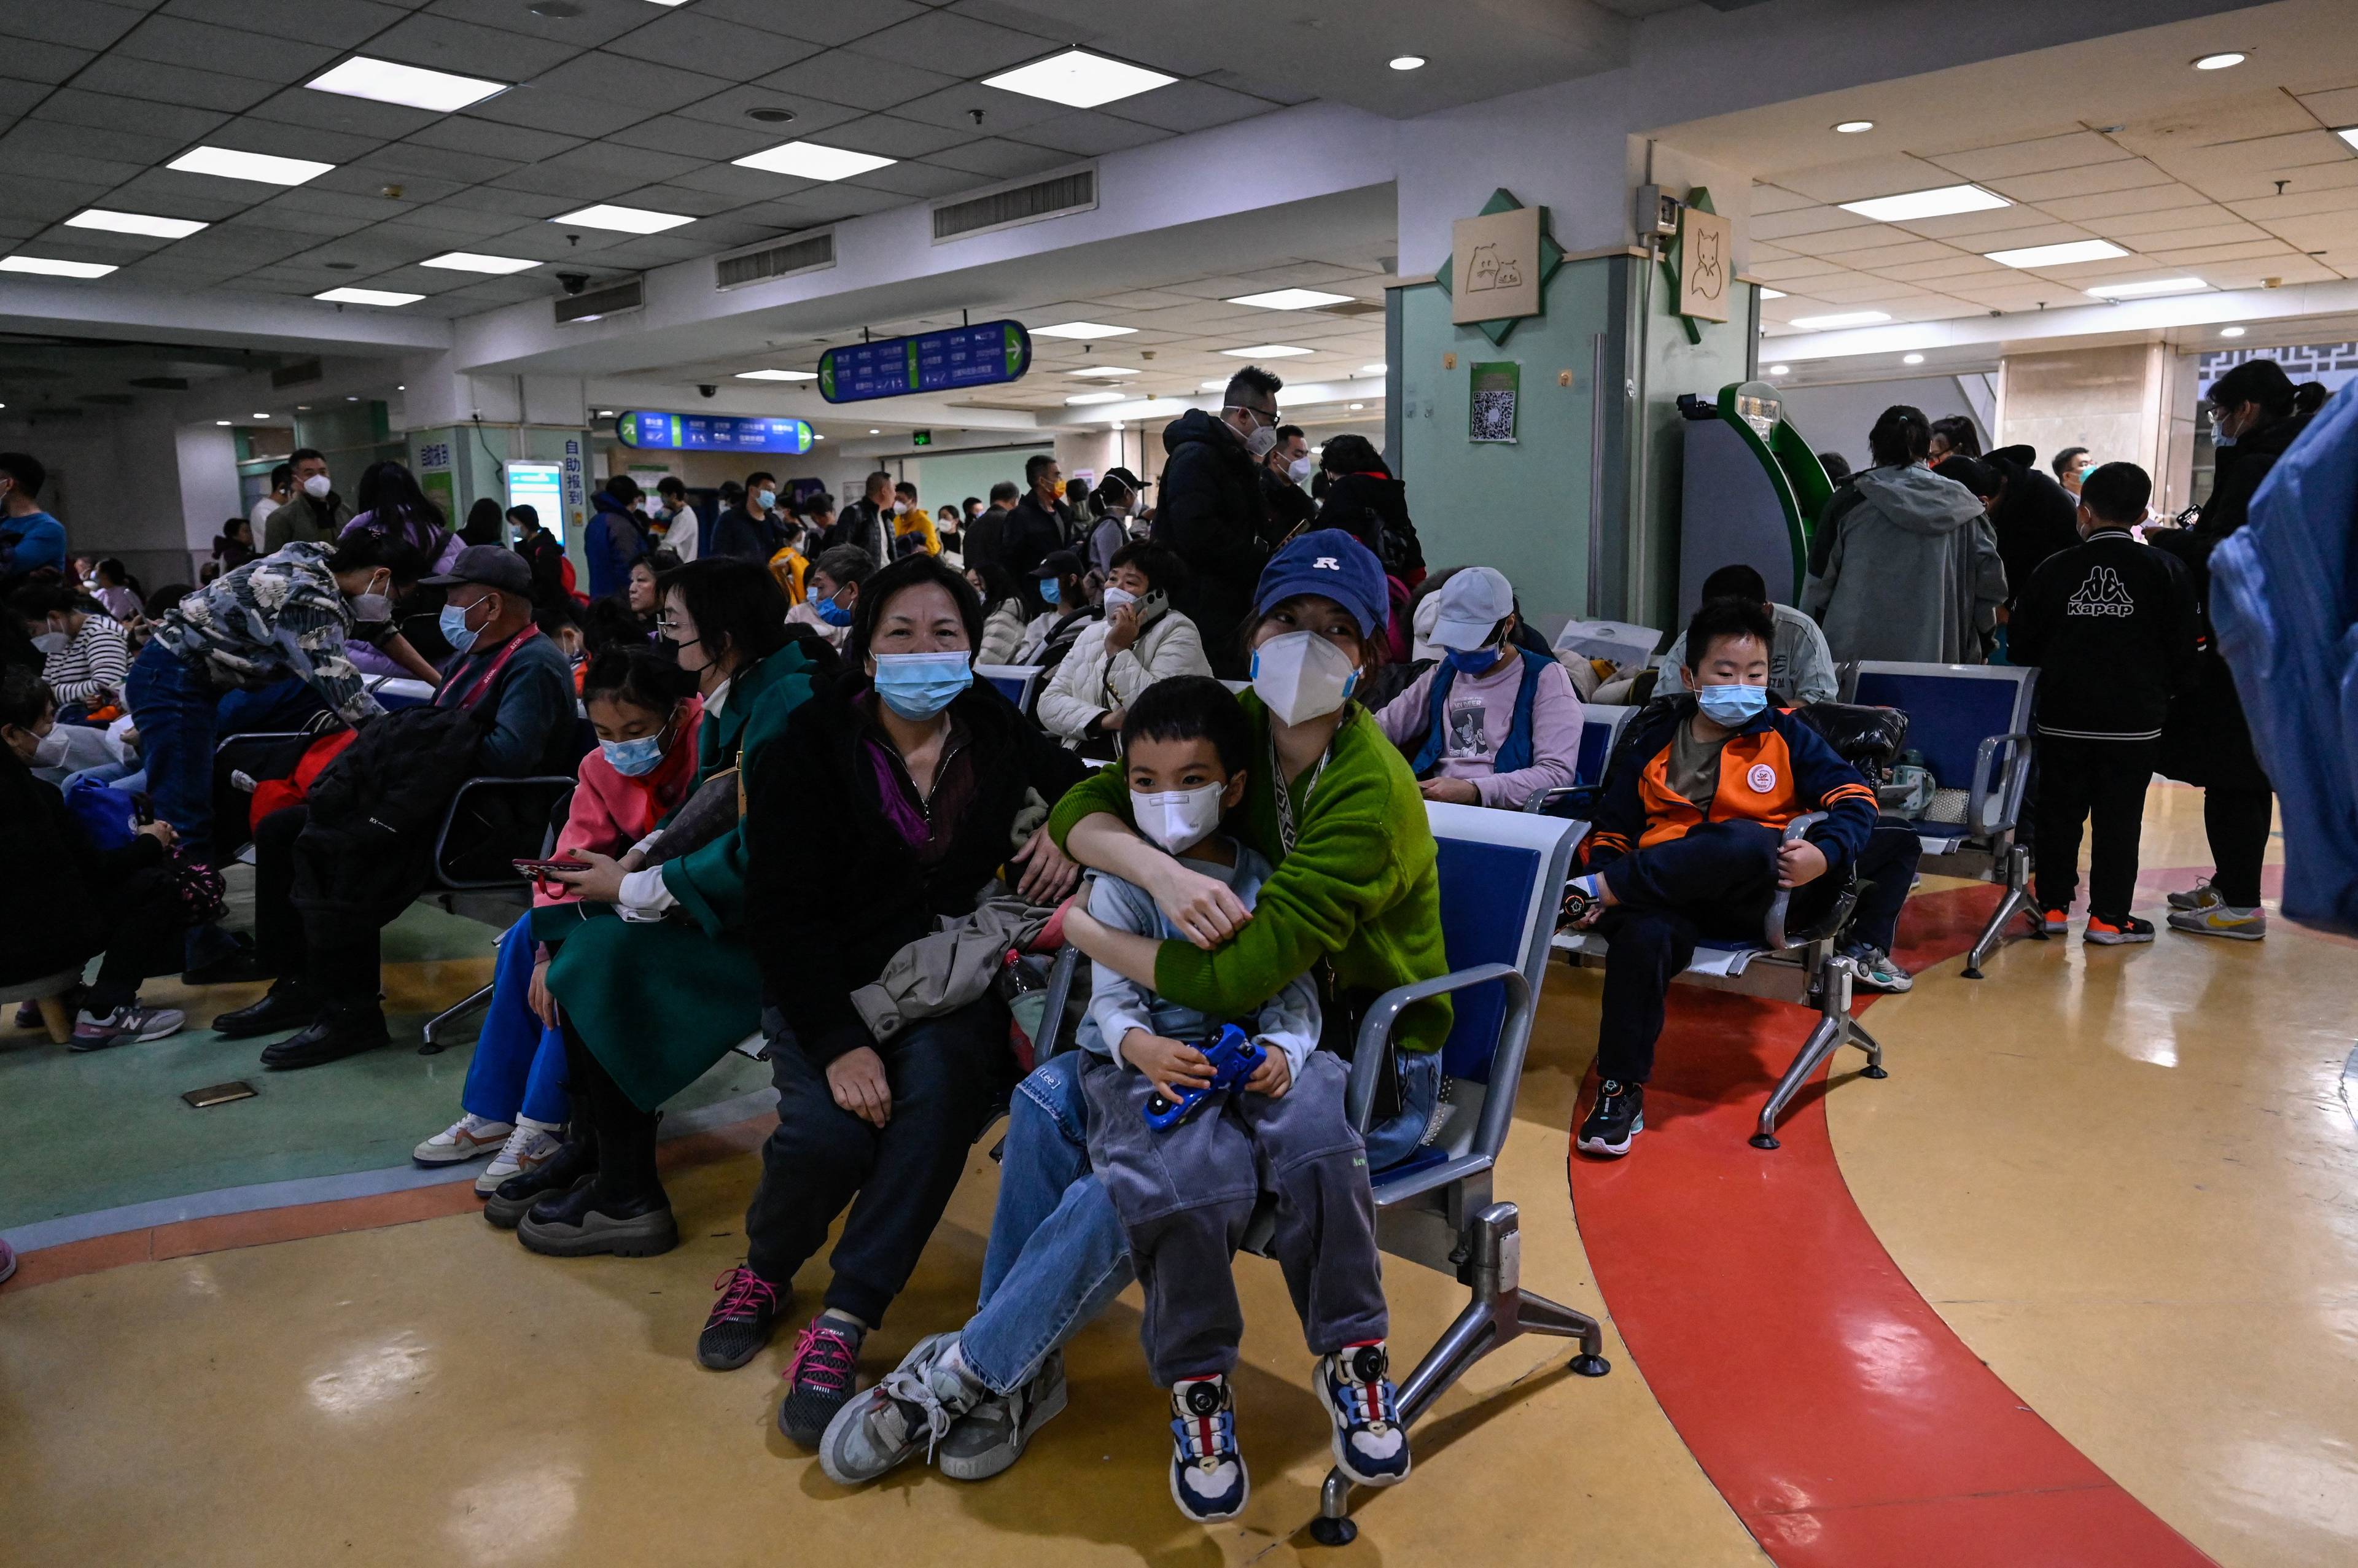 Chińscy rodzice czekają na badanie swych dzieci w poczekalni szpitala. Beijing, 23 listopada (Photo by Jade Gao / AFP)